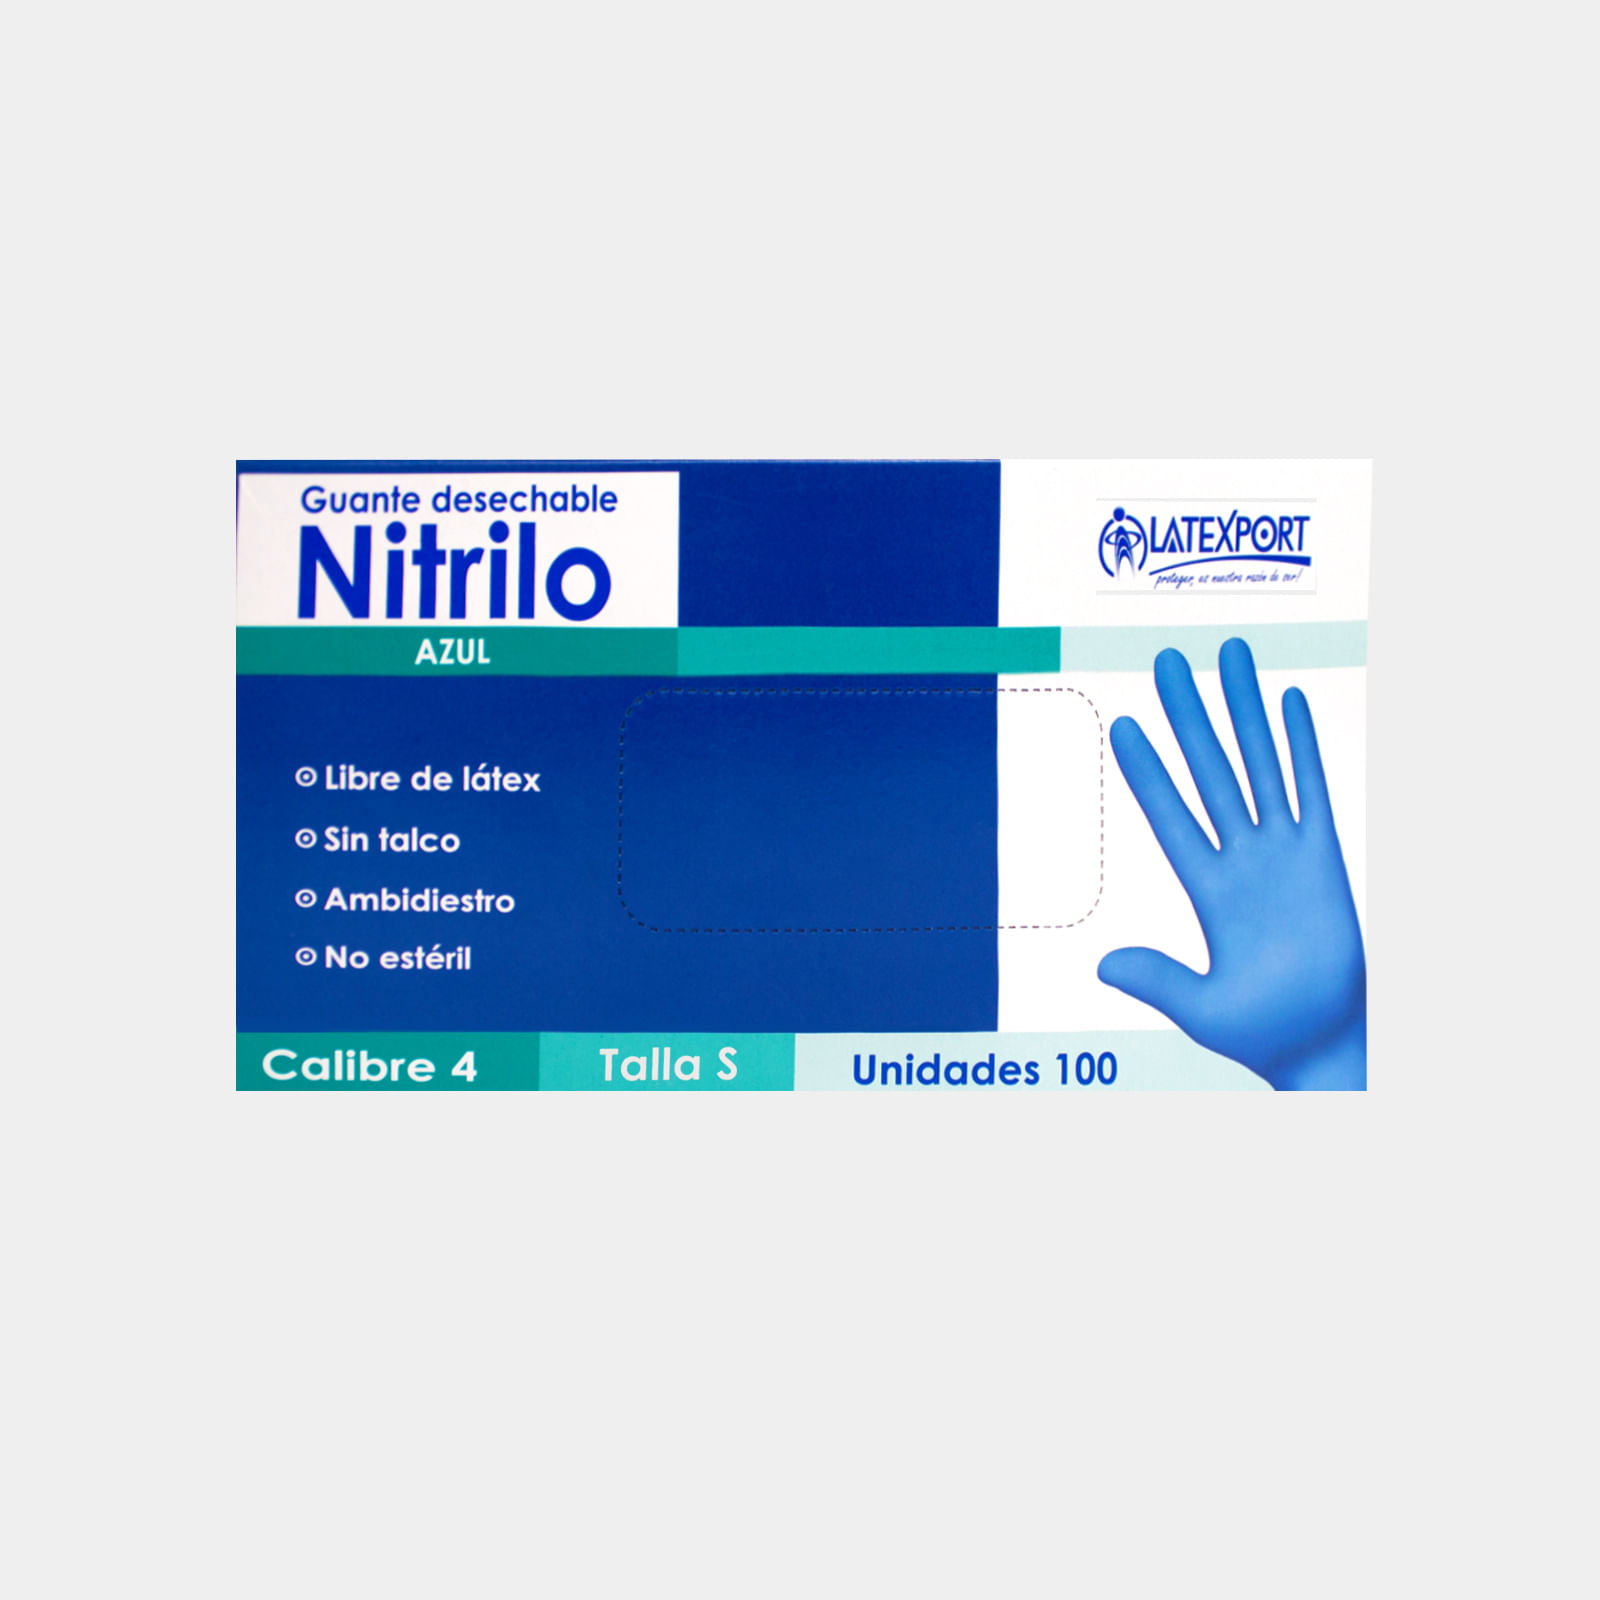 Guante azul de nitrilo sin talco cal 4.5 talla S caja x 100 unidades La  texport